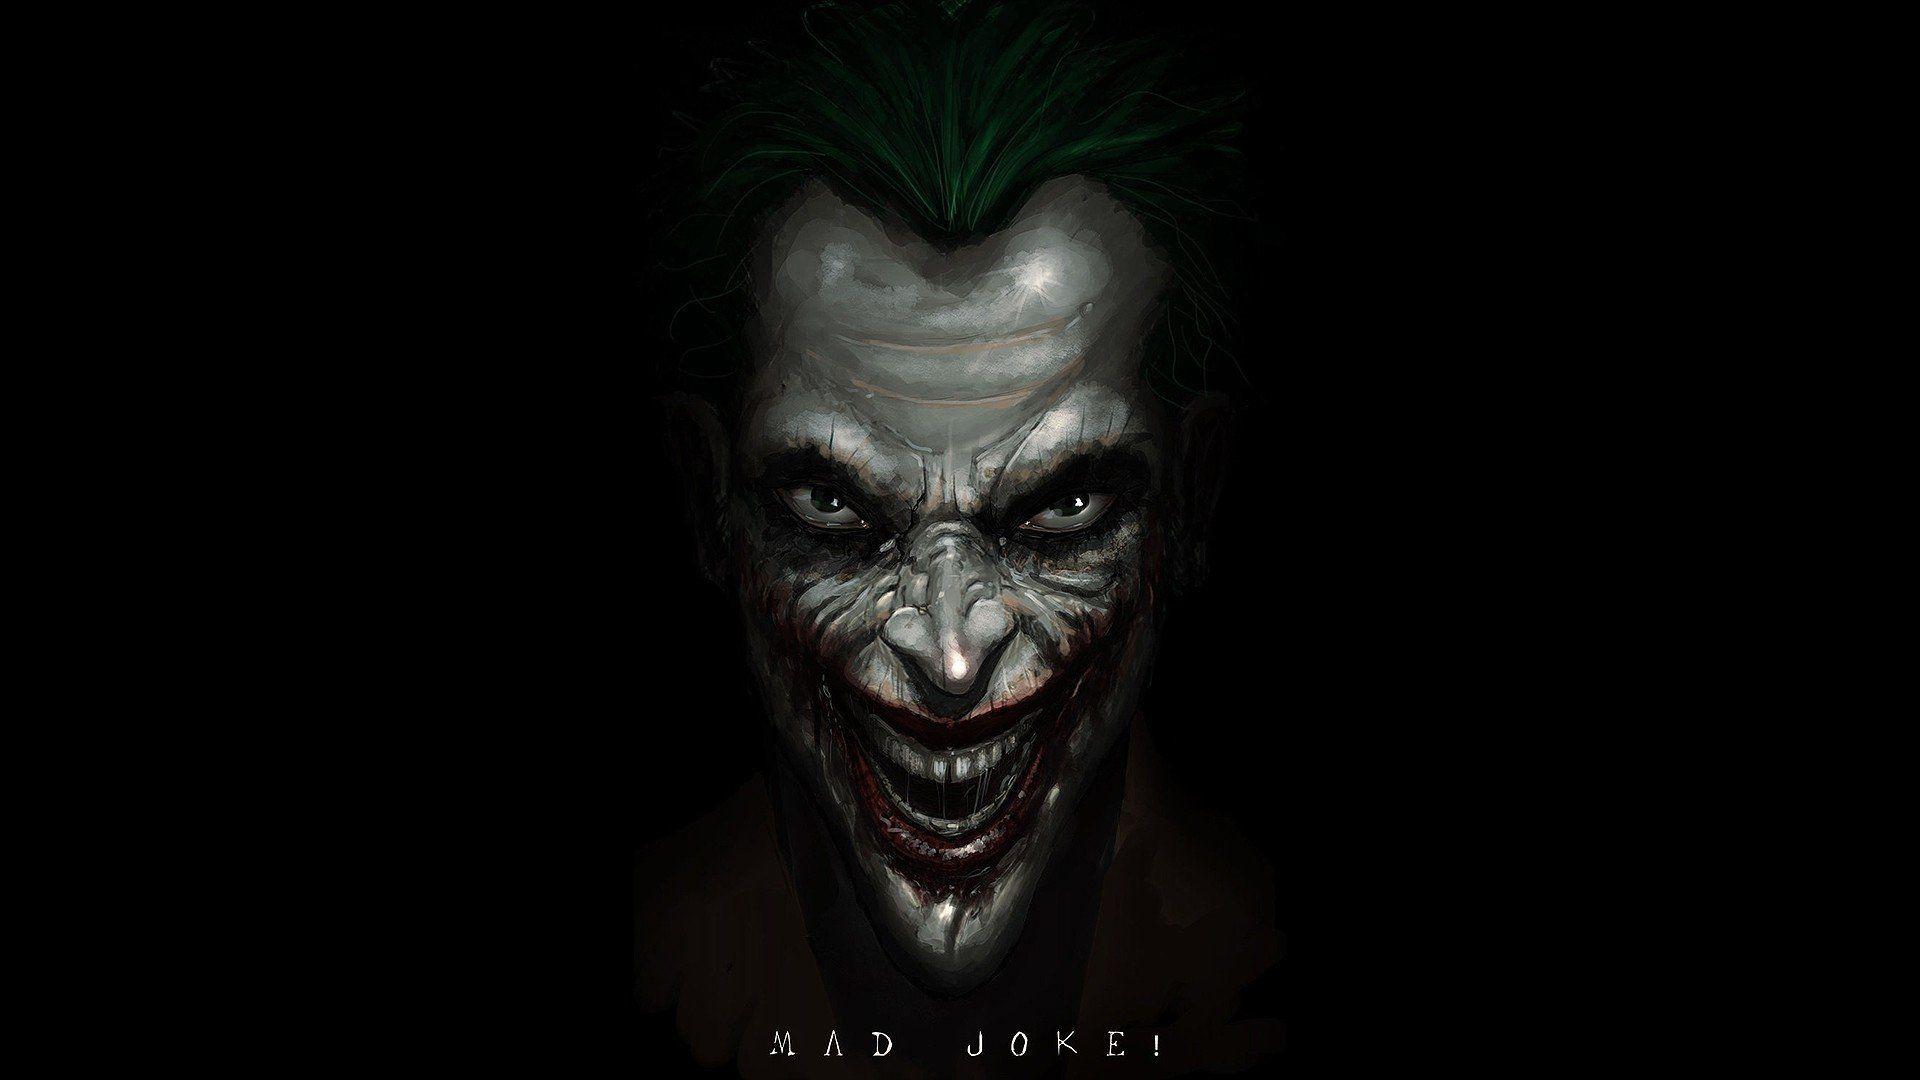 Joker Killing Joke 4K Ultra HD Wallpaper Free Joker Killing